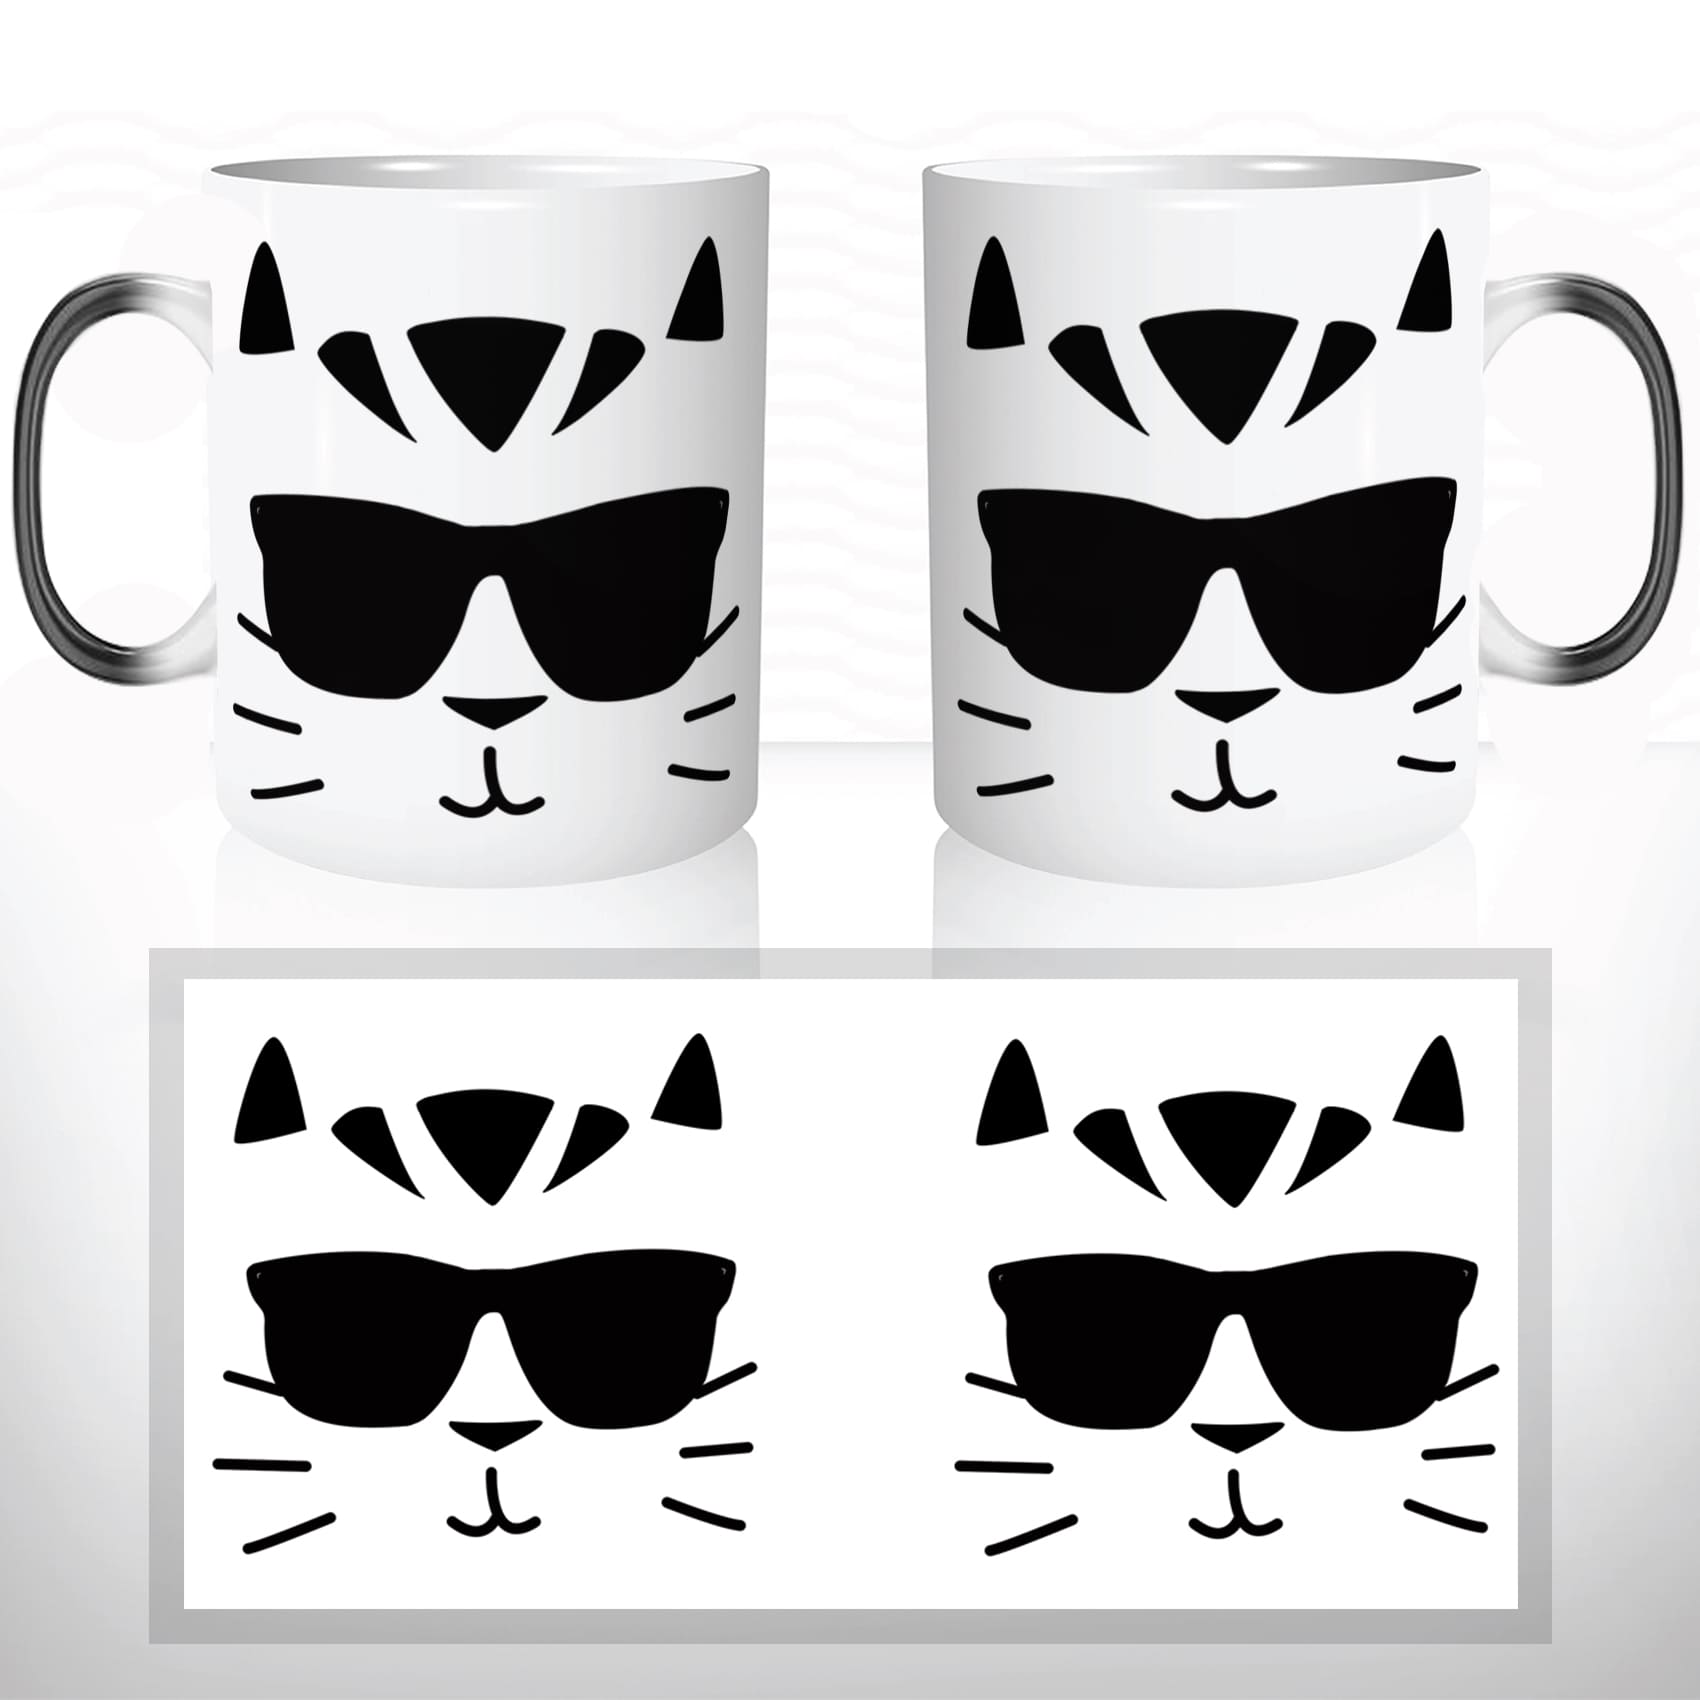 mug-magique-magic-tasse-originale-thermique-chat-noir-cool-a-lunettes-stylé-drole-original-animal-chaton-offrir-idée-cadeau-fun-café-thé-2